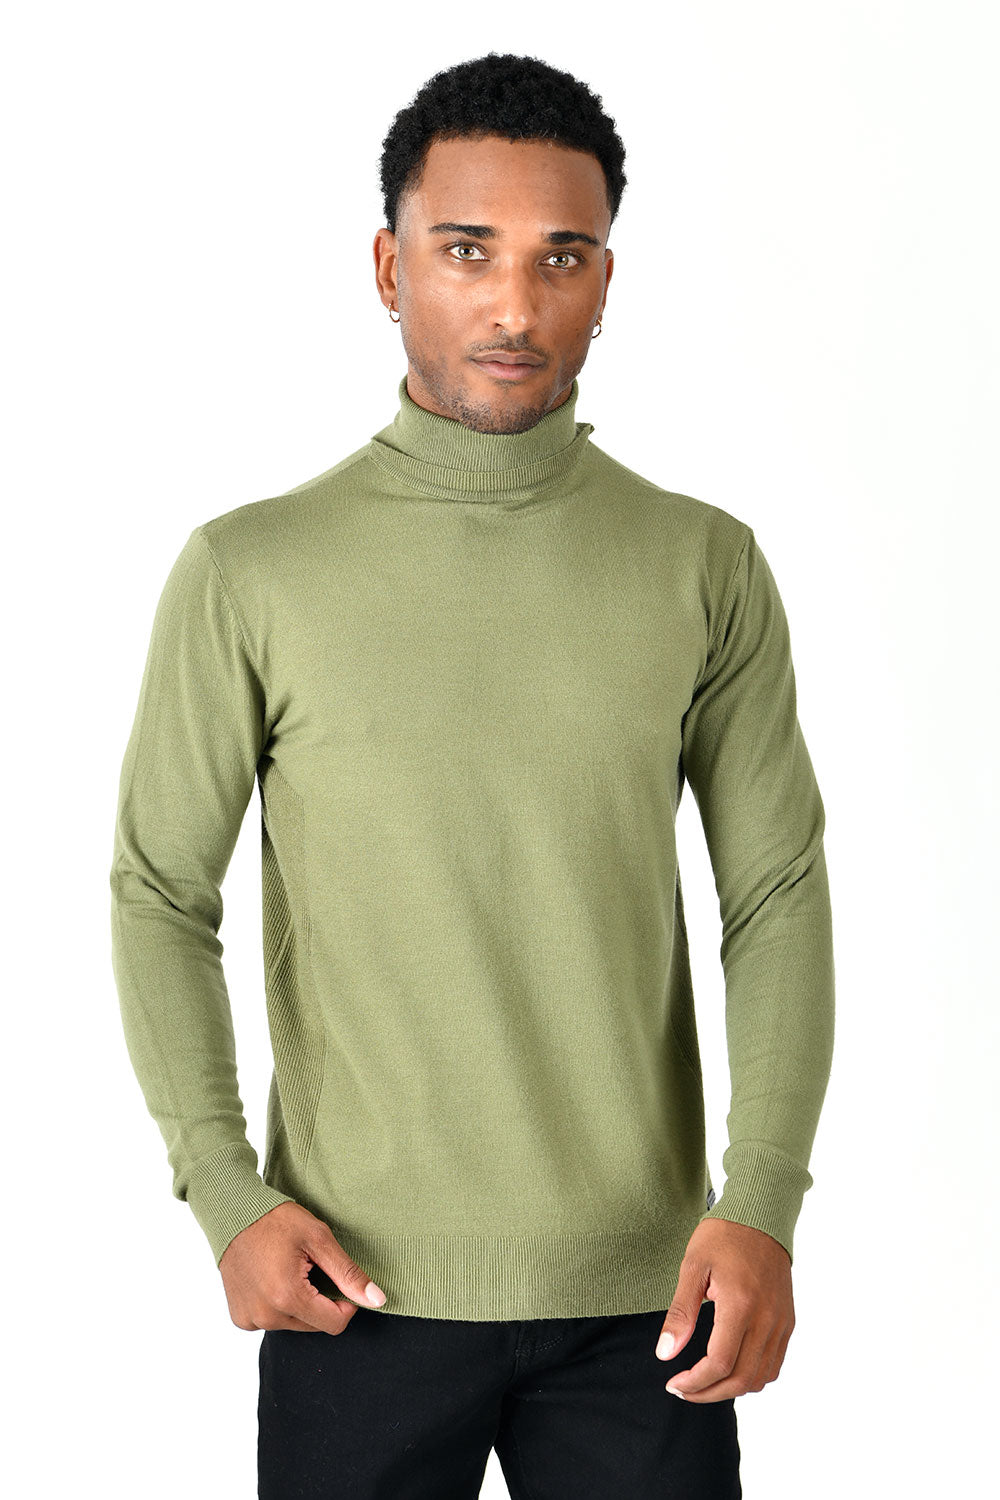 Men's Turtleneck Ribbed Solid Color Basic Sweater LS2100 Olive